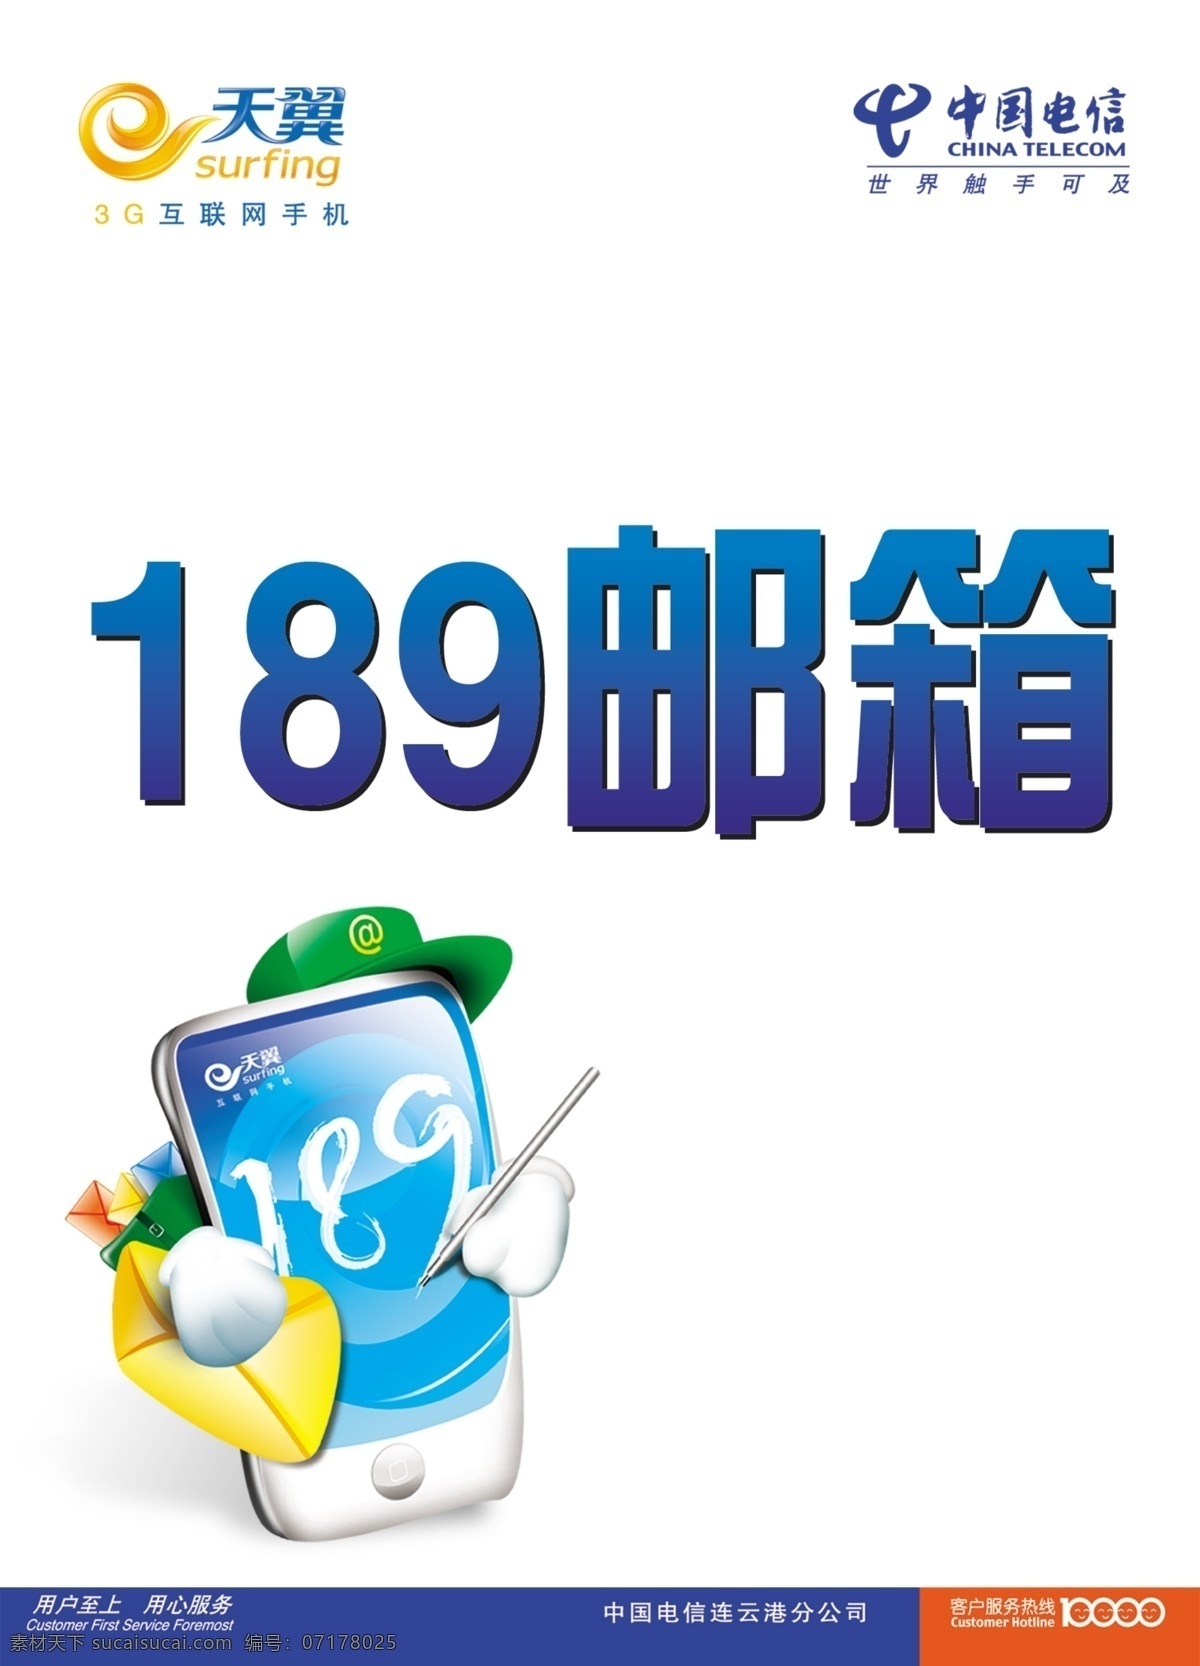 中国电信 广告设计模板 台卡 天翼 源文件 展板模板 189邮箱 矢量图 现代科技